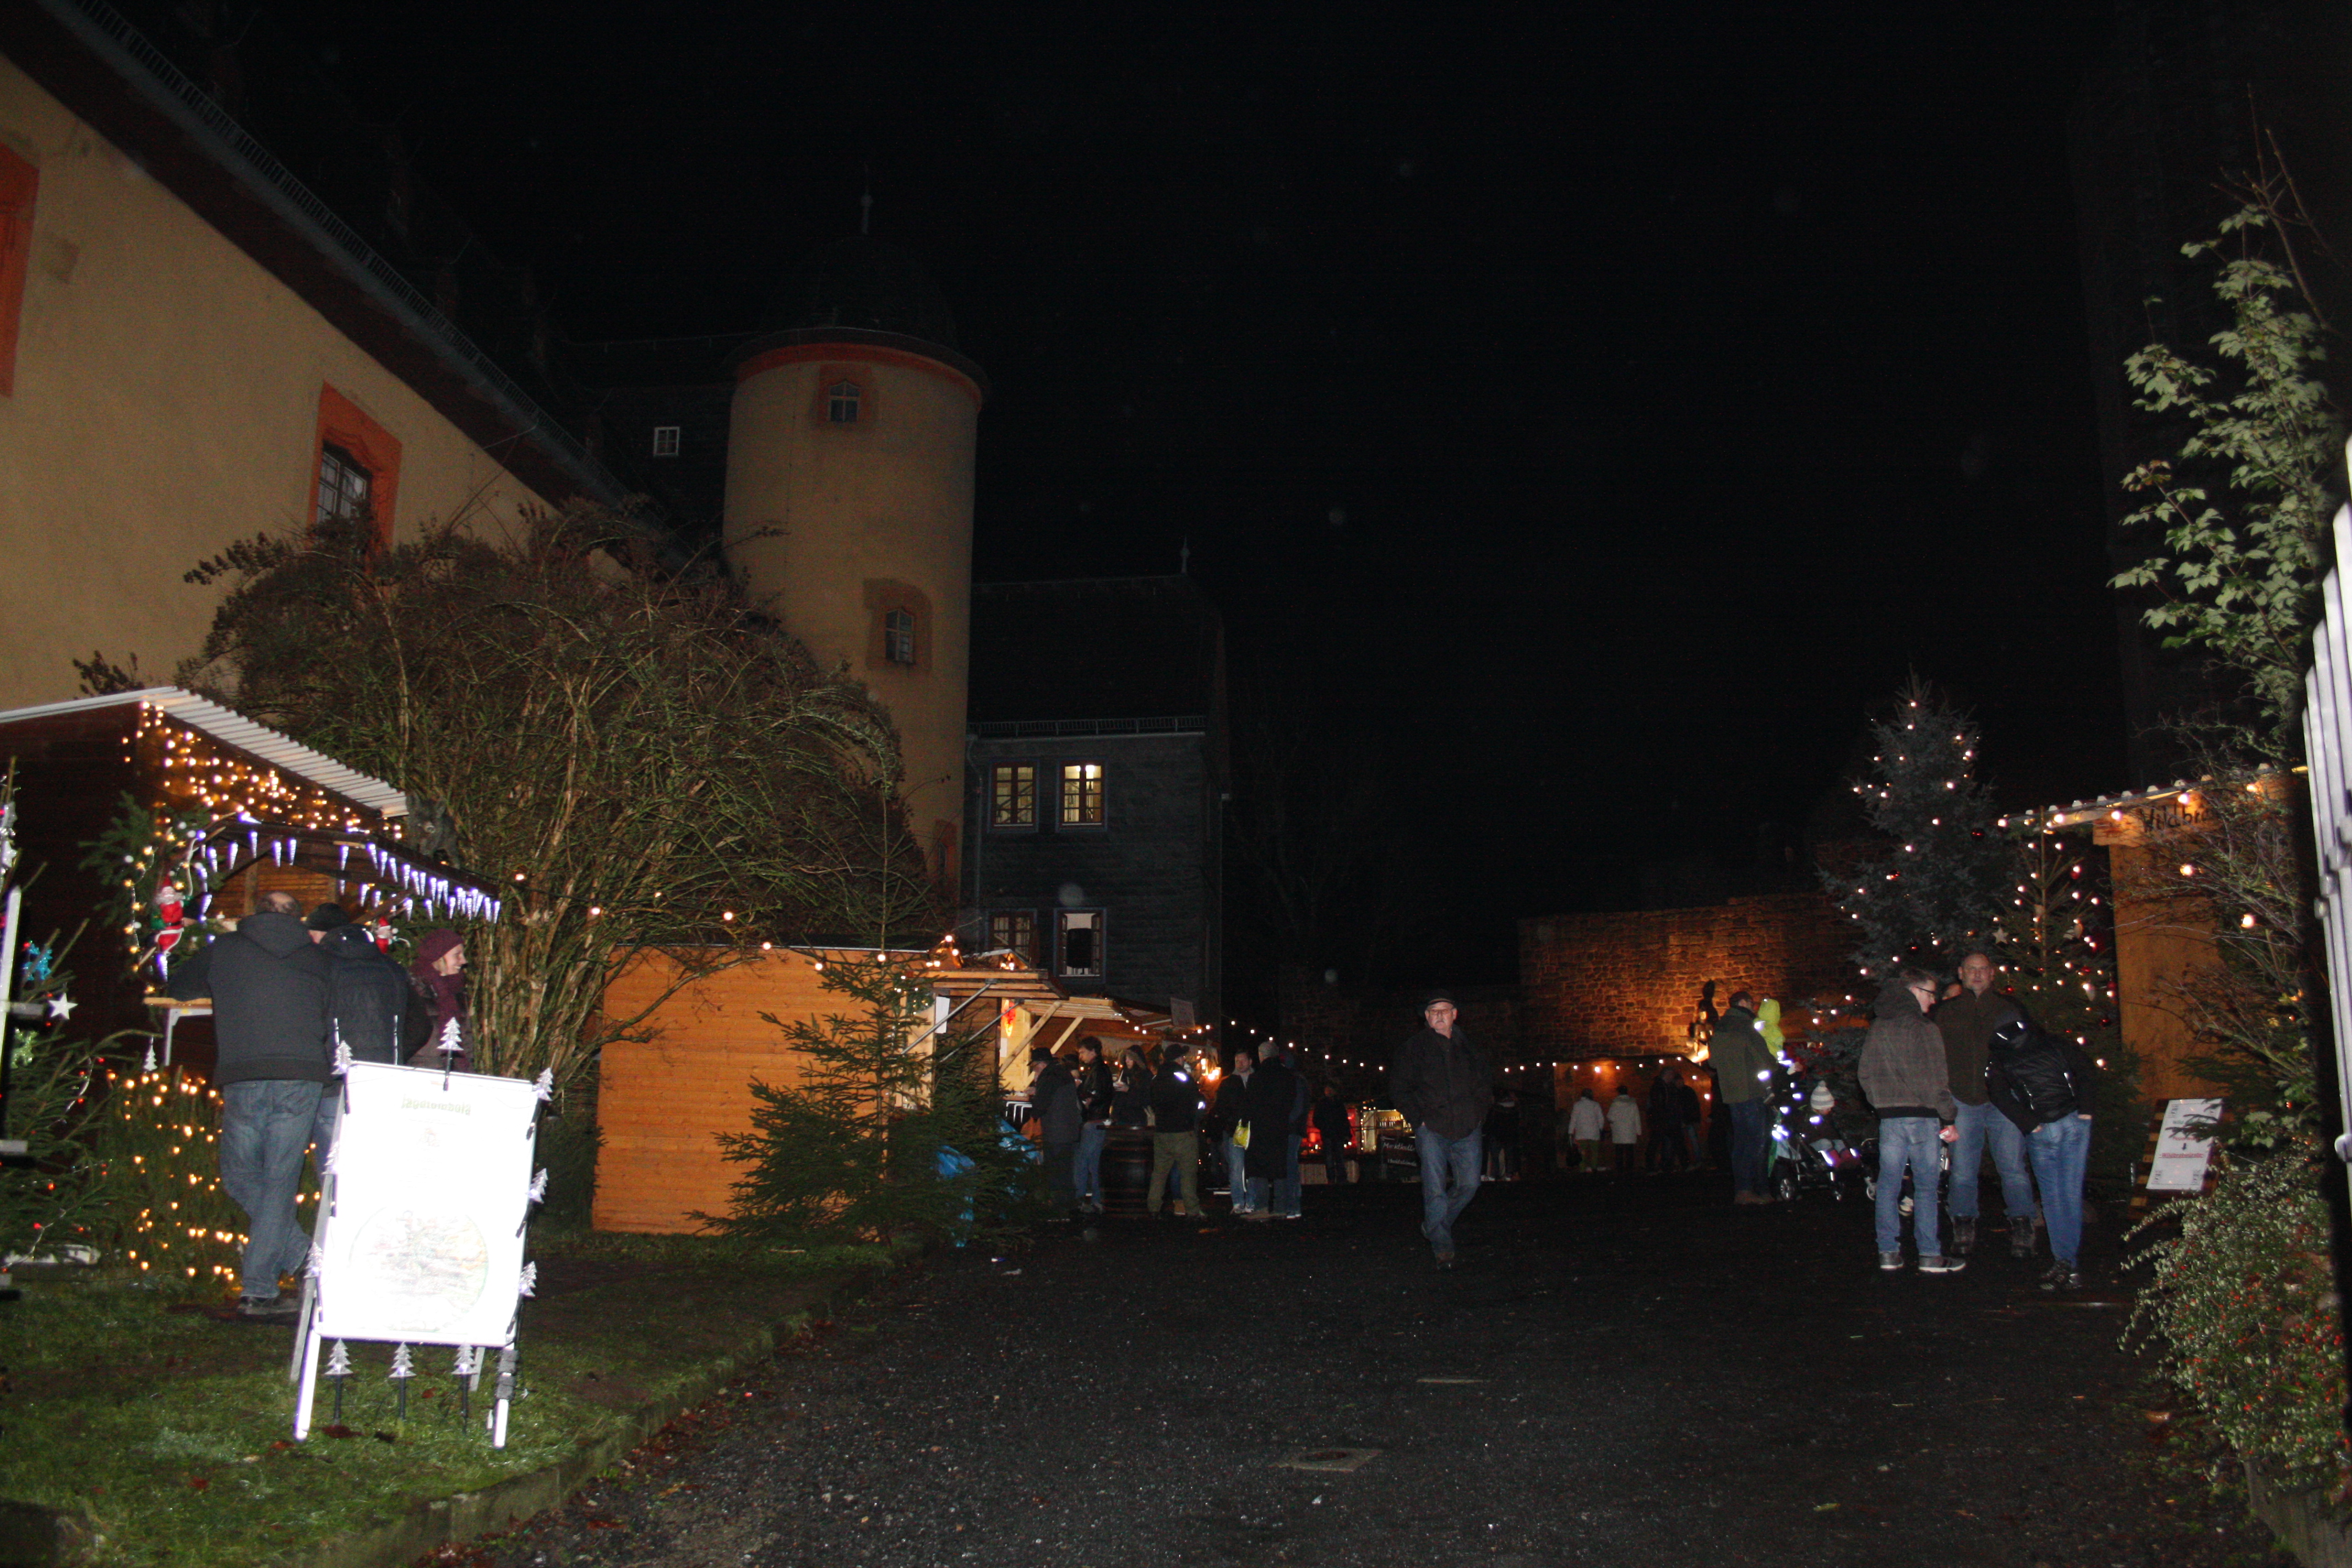 Eingang zum Weihnachtsmarkt Schwarzenfels am Burgtor.
